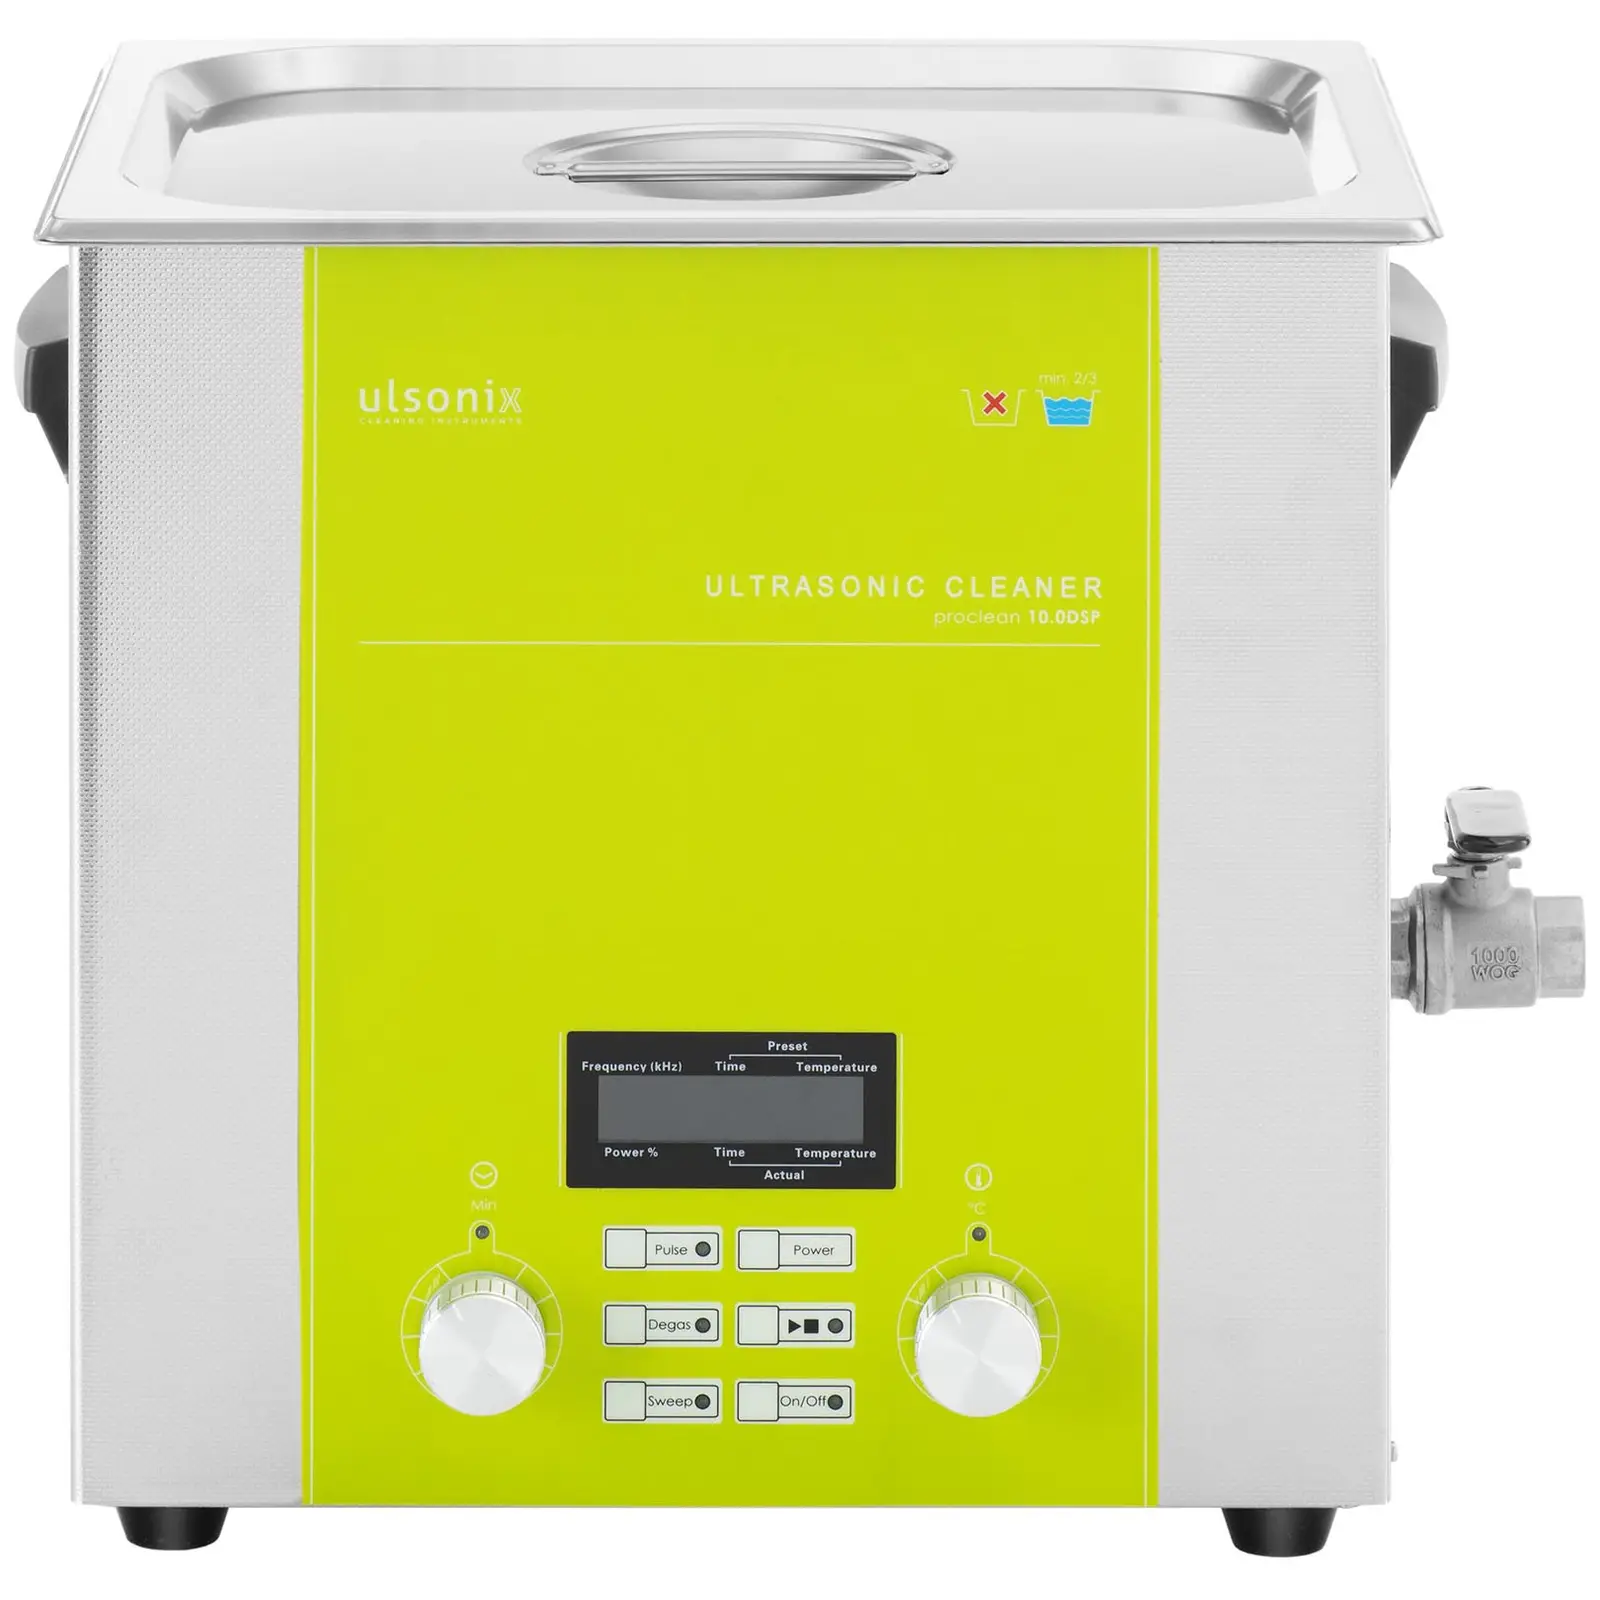 Ultralydvasker - 10 liter - degas - sweep - pulse